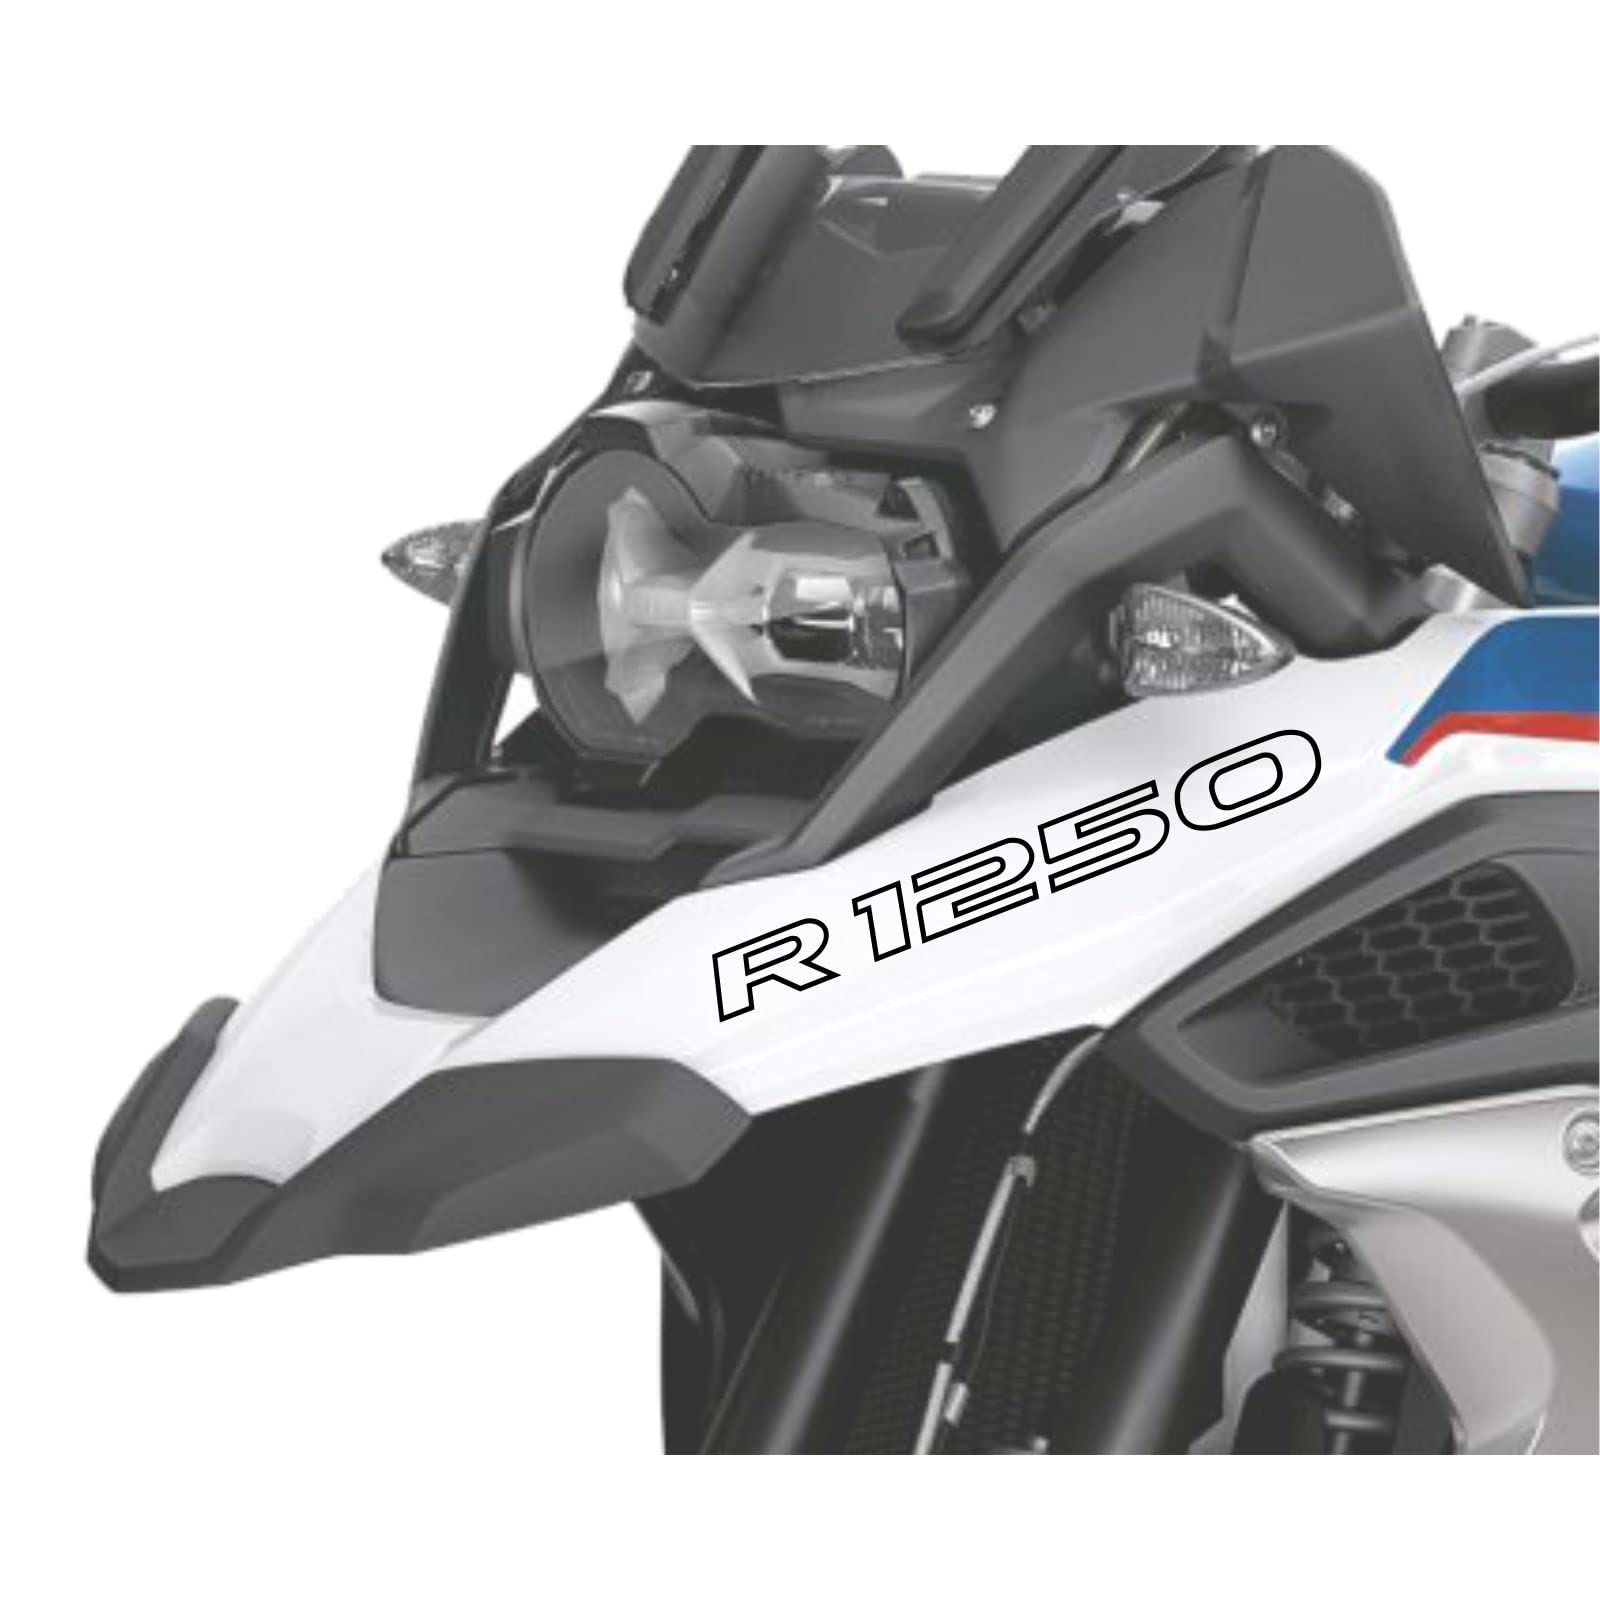 2pcs Aufkleber R1250 kompatibel für Motorrad BMW R1250 GS R 1250 HP Adventure (Black) von Black Doves Graphics